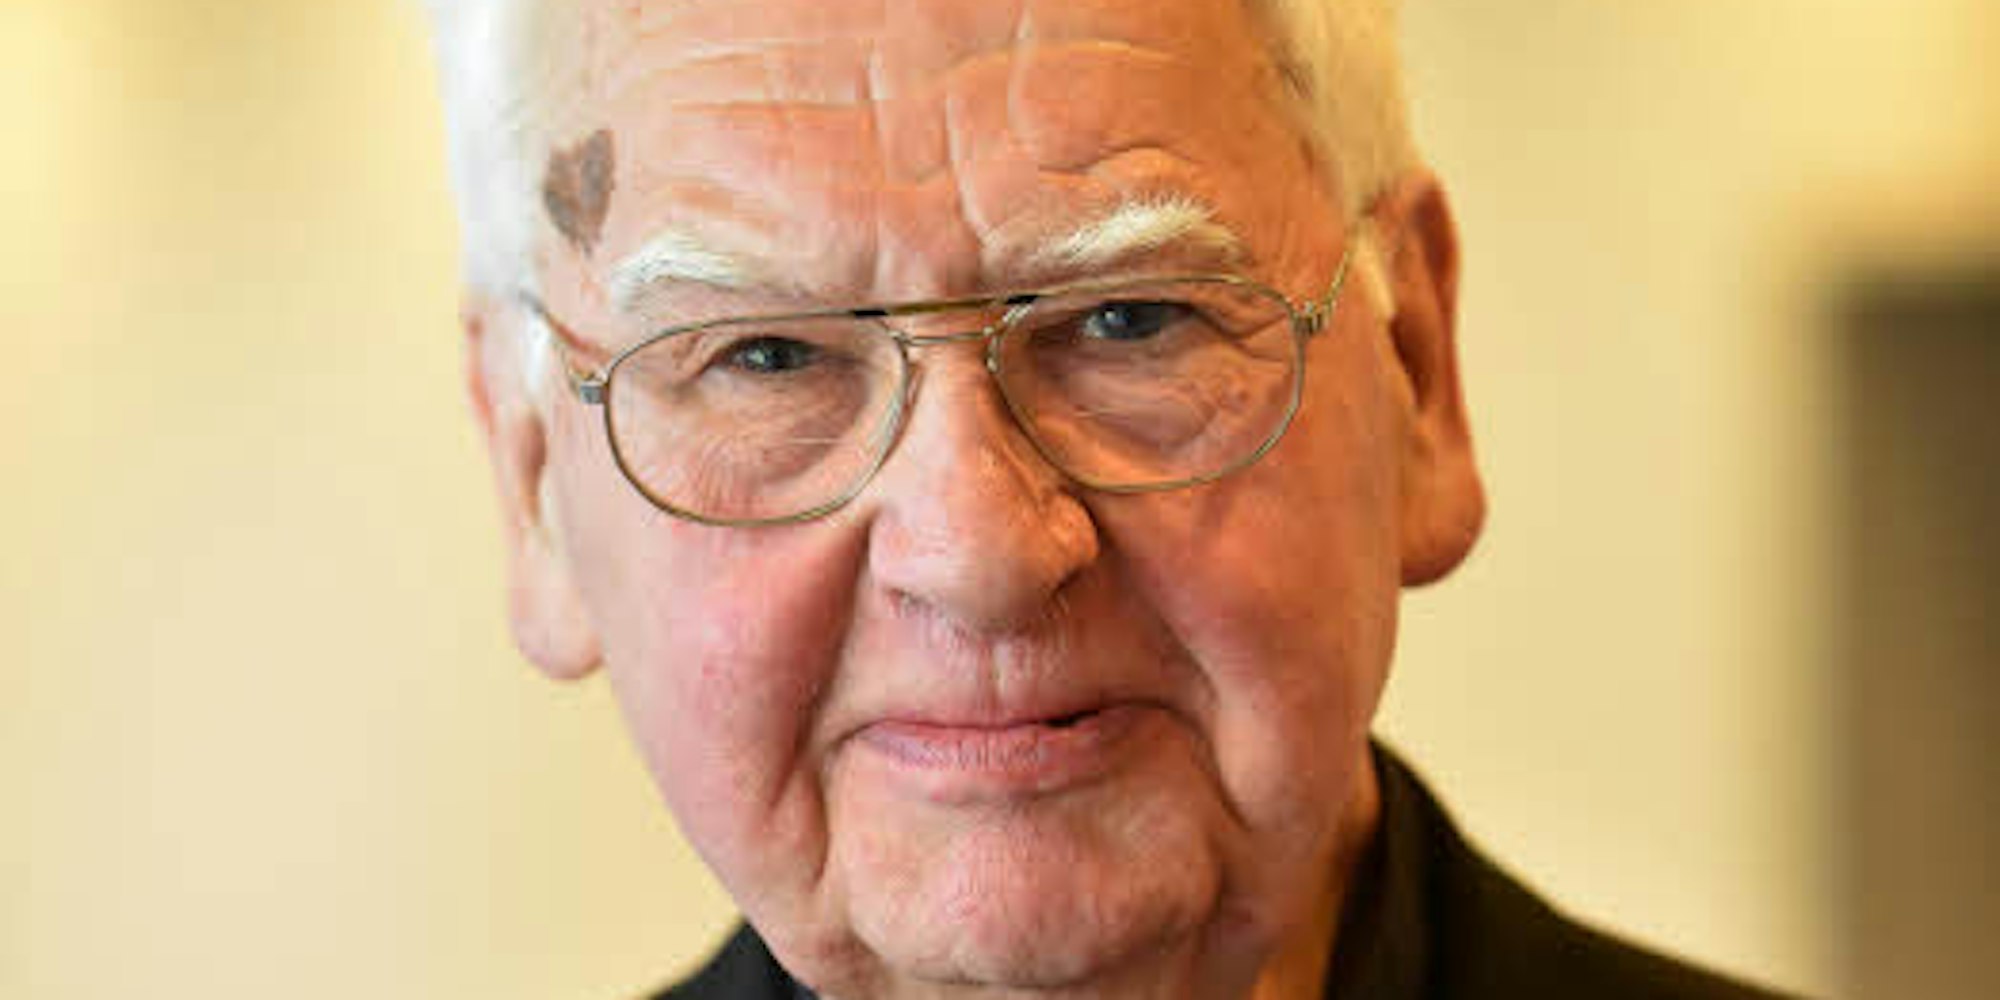 Spenden statt Geschenke wünschte sich Monsignore Rolf E. Buschhausen zu seinem 80. Geburtstag.